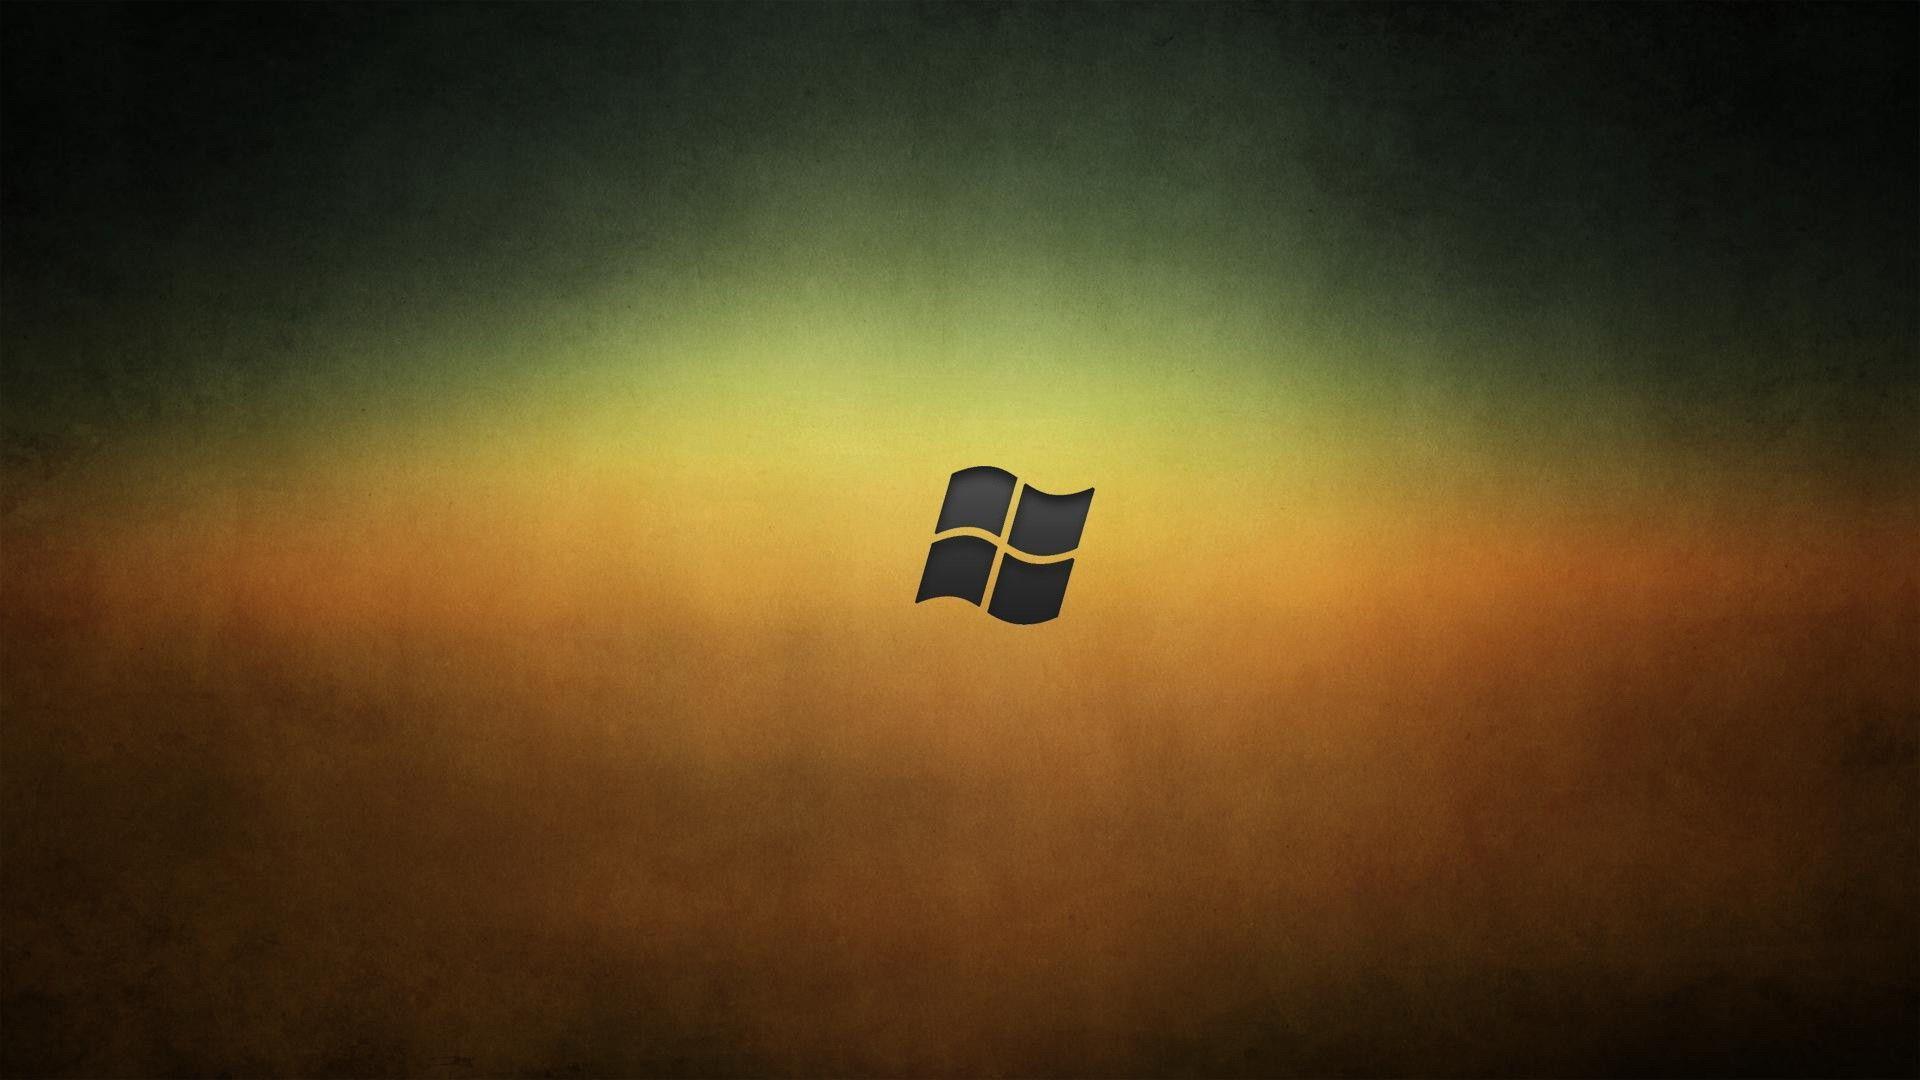 Logos For > Windows Logo Wallpaper 1920x1080